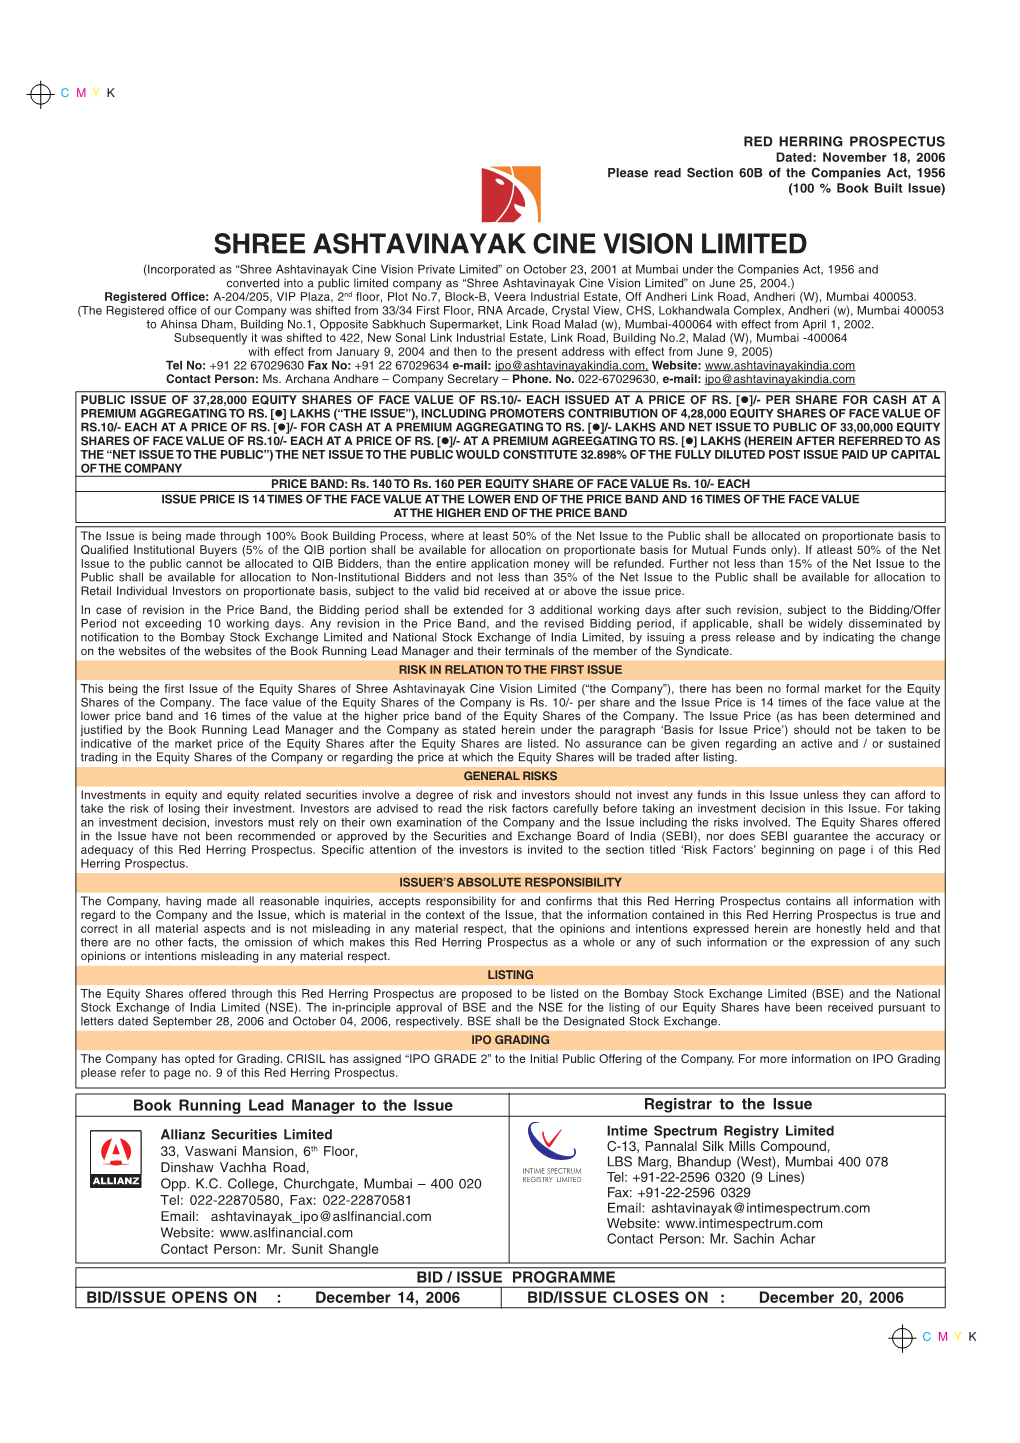 Shree Ashtavinayak Cine Vision Limited